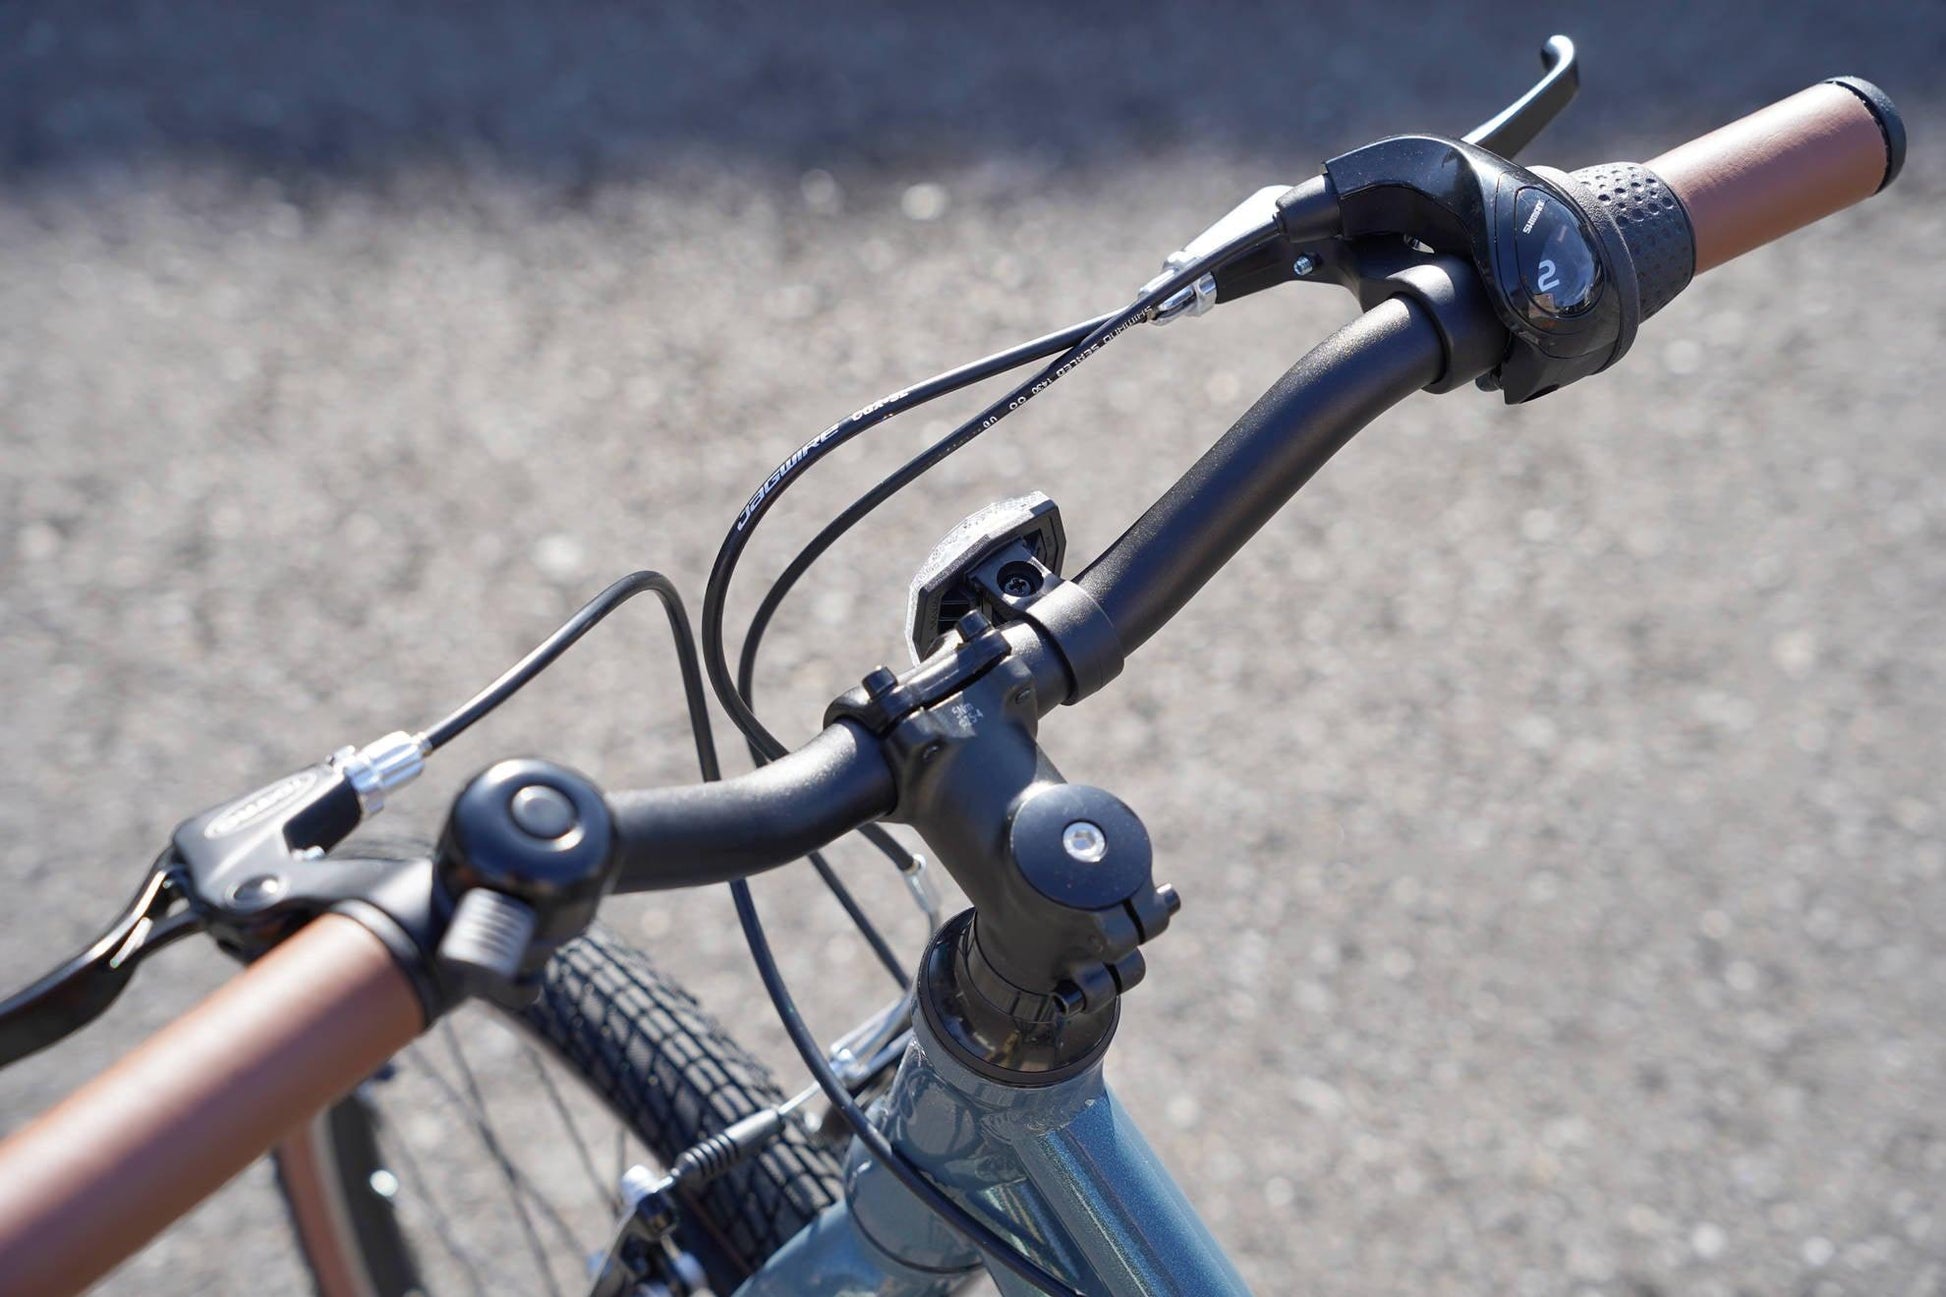 子供自転車 wimo kids 16 (Kale / ケール）| 3.5-6才 | 100-135cm | 6.45kg | - wimo online store - オシャレ電動自転車 - 最軽量級子供自転車